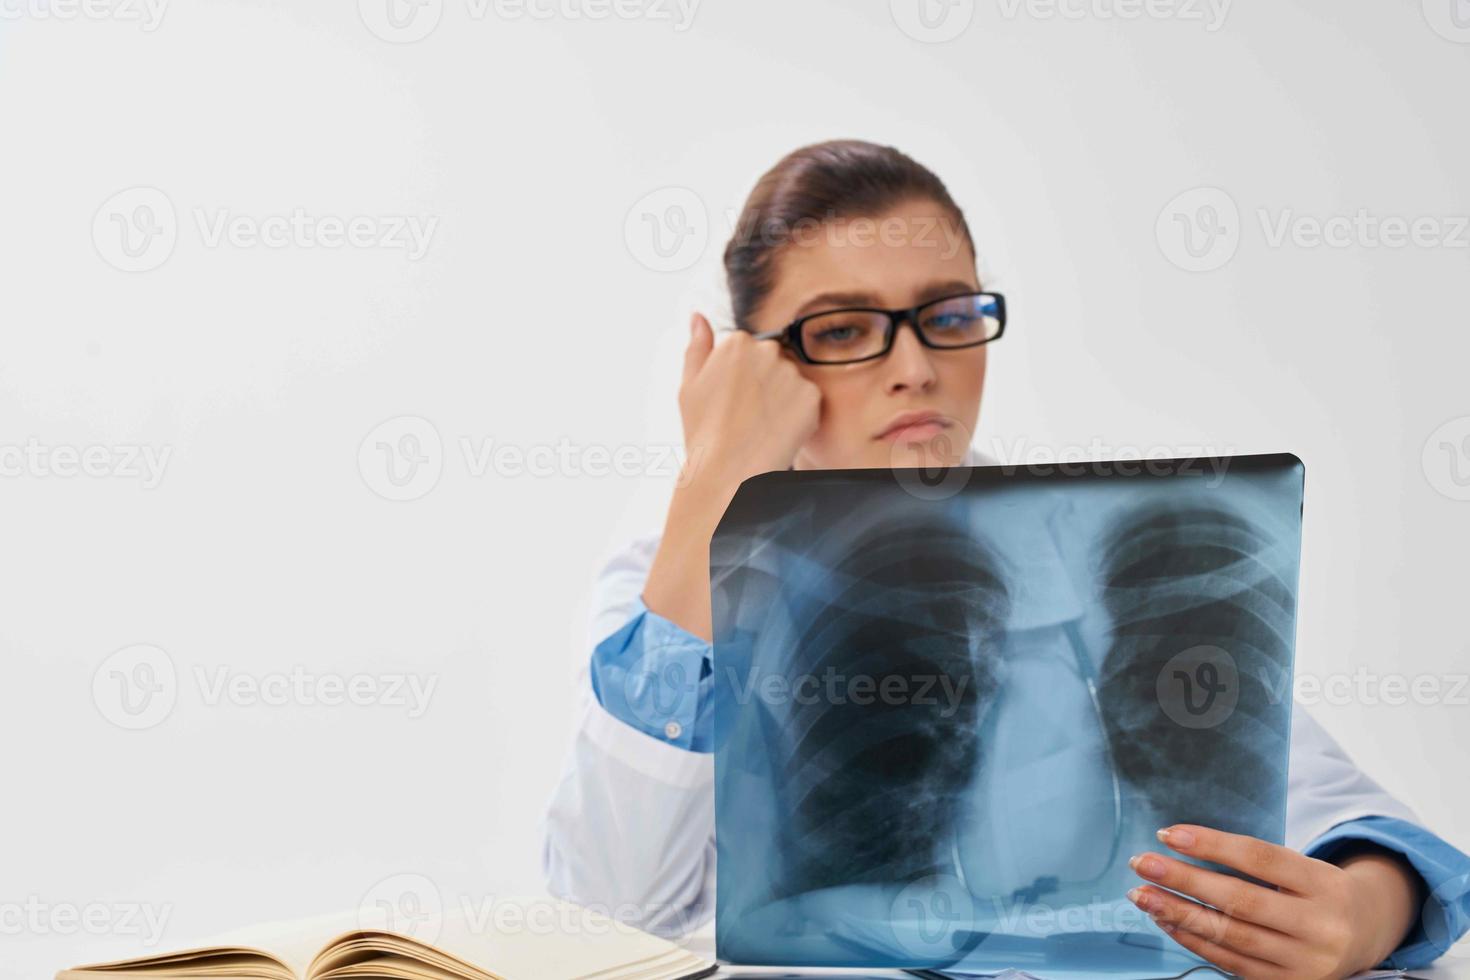 kvinna Sammanträde på tabell röntgen och medicin sjukhus forskning foto